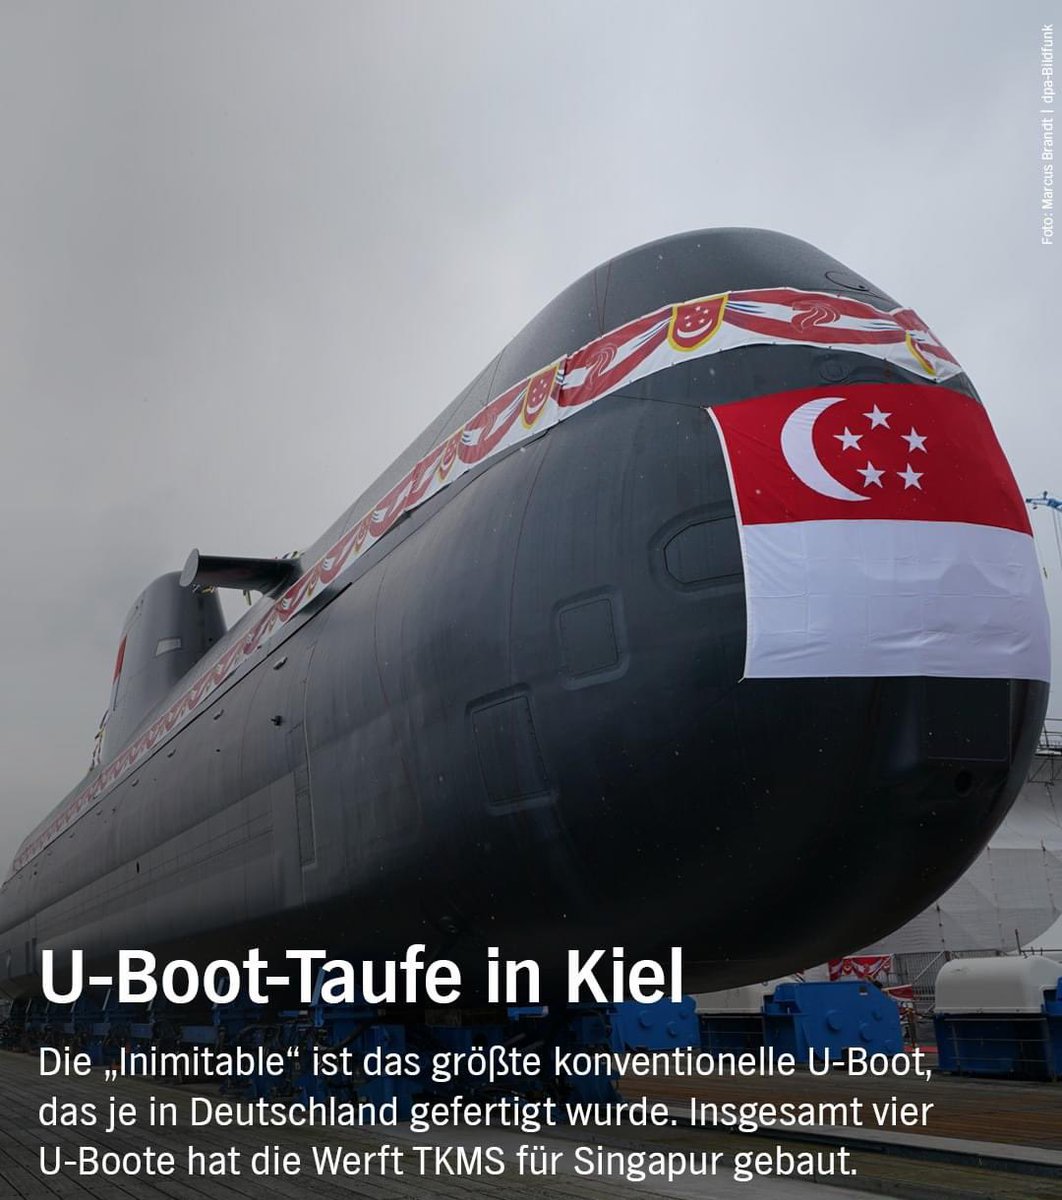 Das 70 Meter lange U-Boot wird nach weiteren Tests im kommenden Jahr nach #Singapur überführt. 🇸🇬